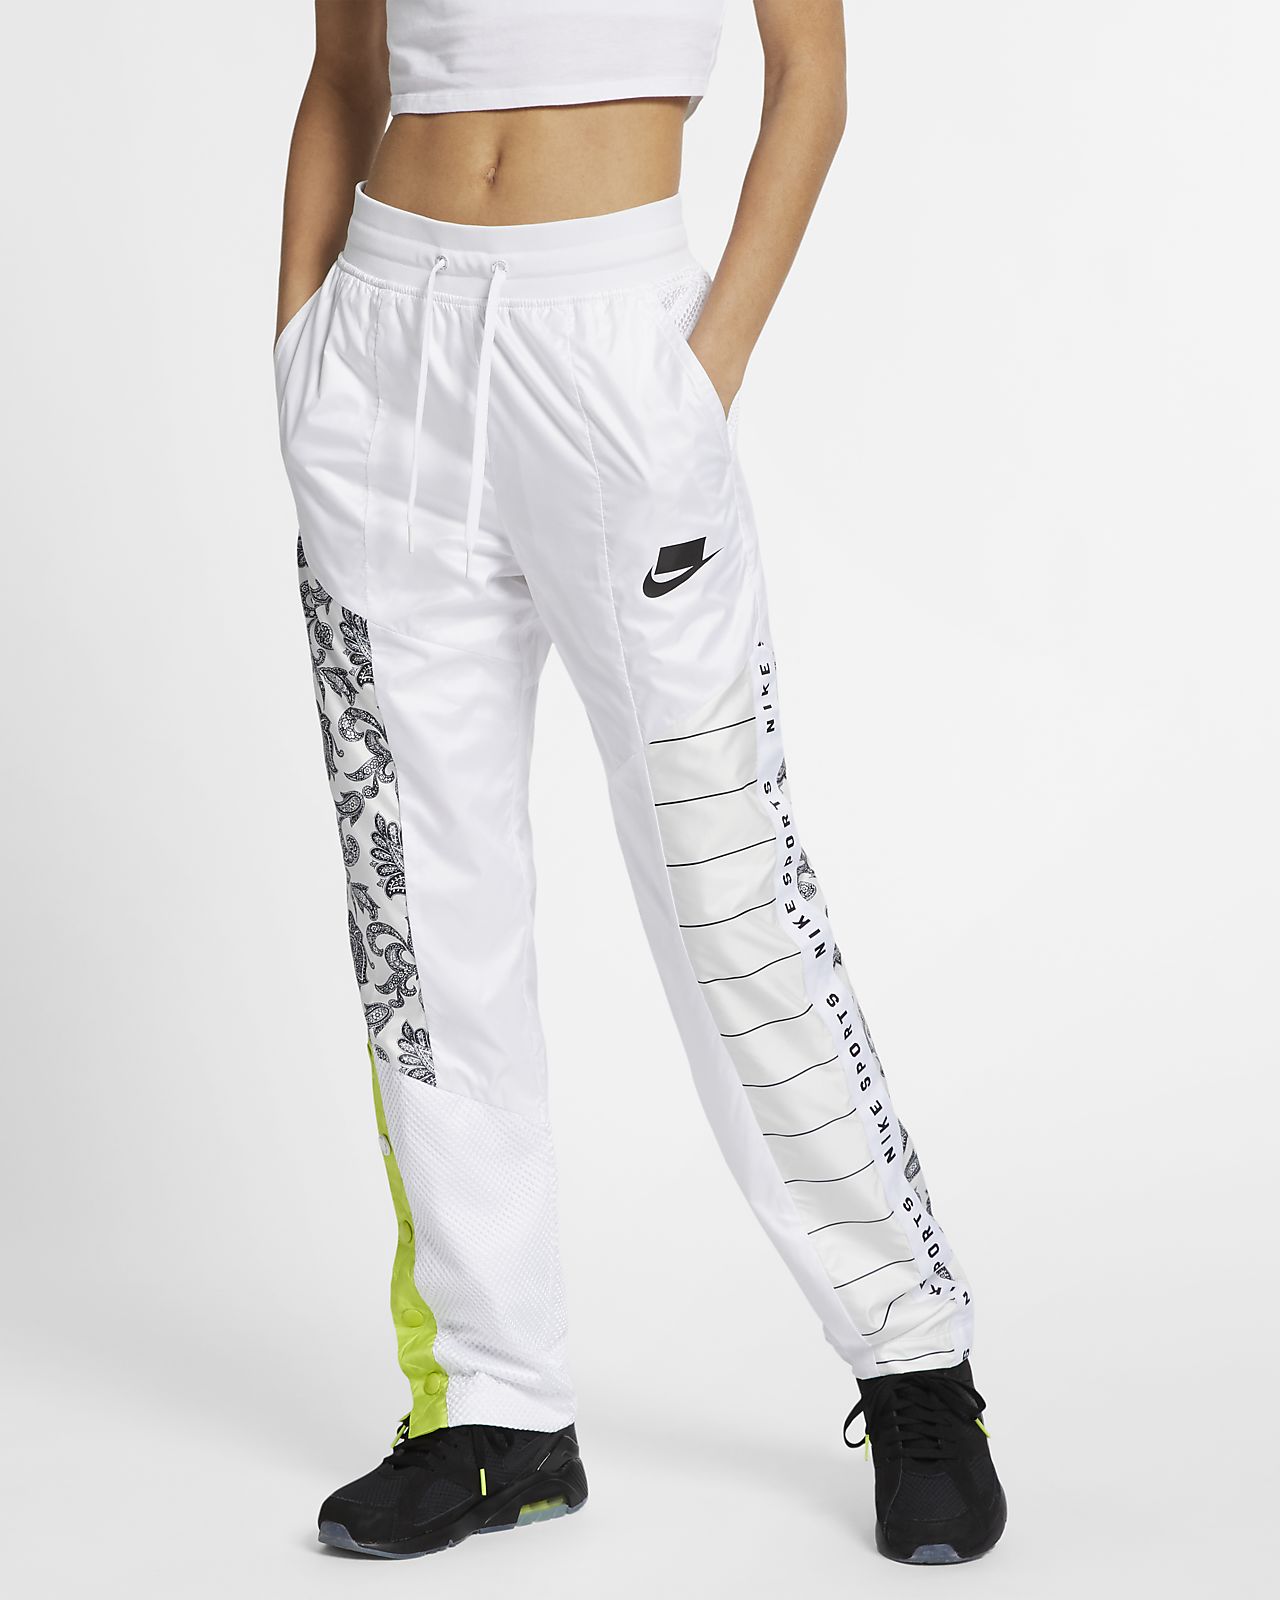 Pantalon de survêtement tissé Nike Sportswear NSW pour Femme. Nike LU